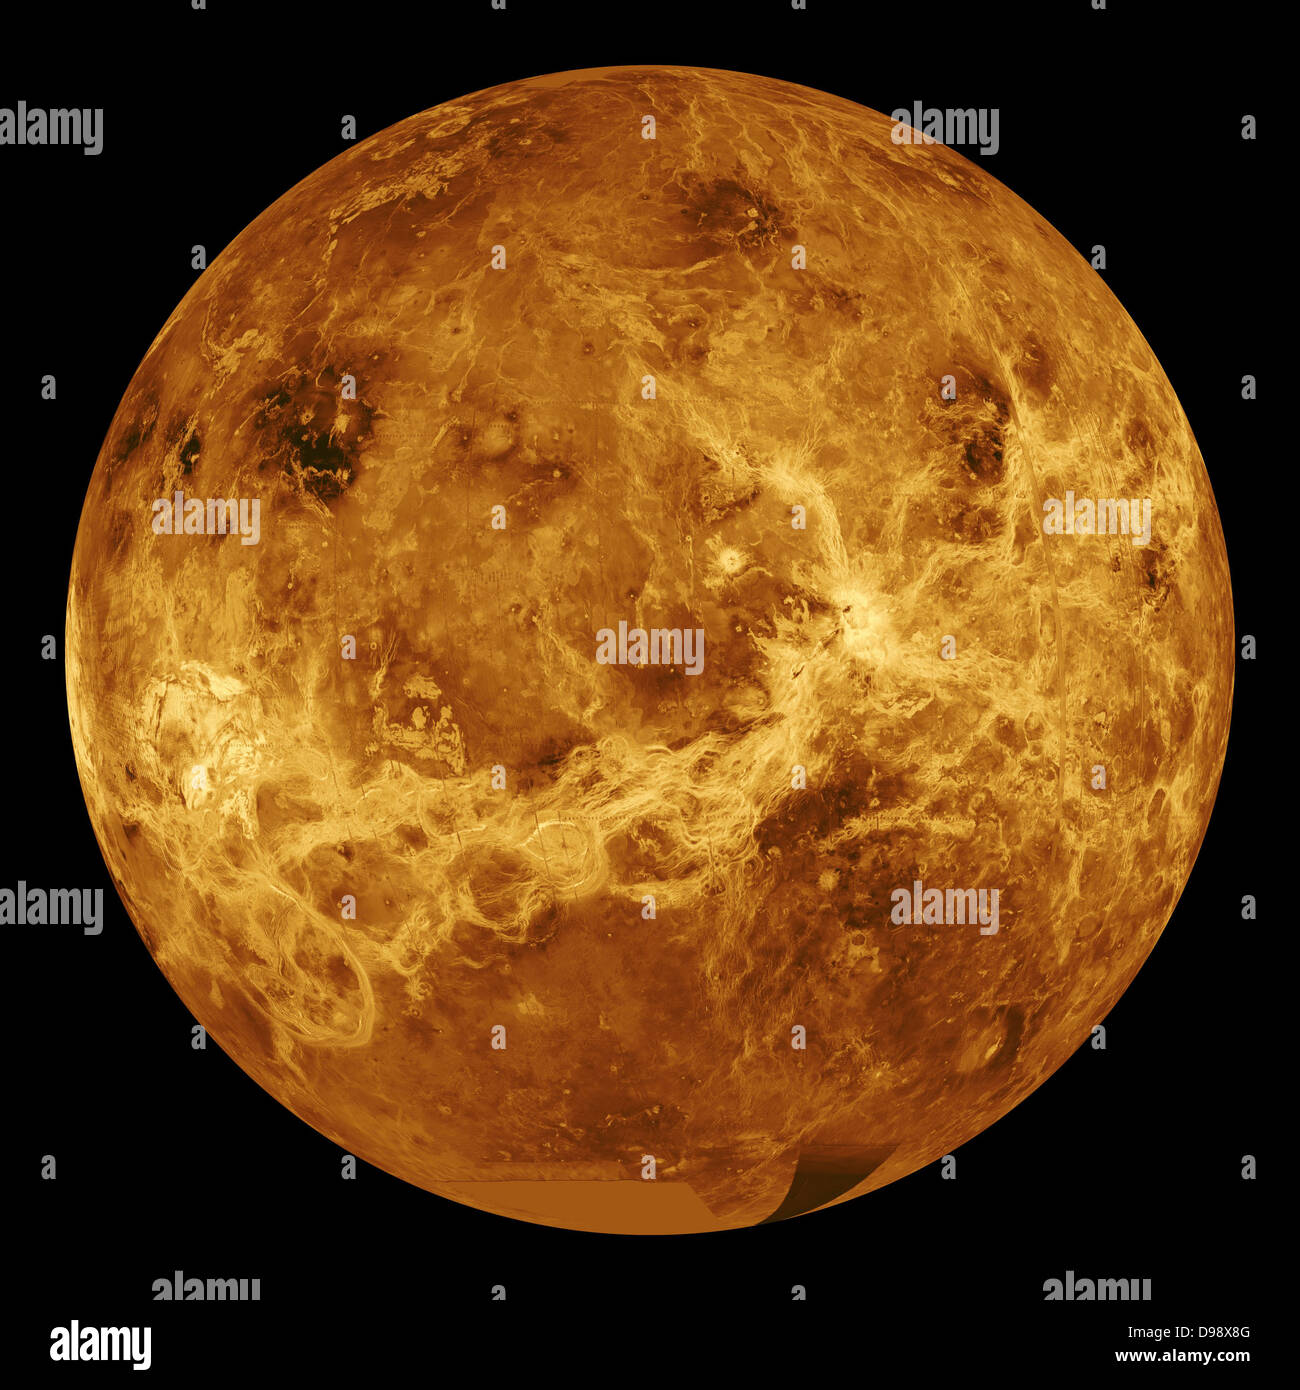 Esta visión global de la superficie de Venus está centrado a 180 grados de longitud este. Mosaicos de radar de apertura sintética de Magallanes desde el primer ciclo de mapeo de Magallanes son mapeadas a un globo simulados por computadora para crear esta imagen. Las lagunas de datos se rellenan con Pioneer Venus Orbiter datos o una constante valor de gama media. Color simulado se utiliza para mejorar la estructura de pequeña escala. Los tonos son simuladas basadas en el color las imágenes grabadas por la Unión Soviética Venera 13 y 14 naves espaciales. 1991 Foto de stock